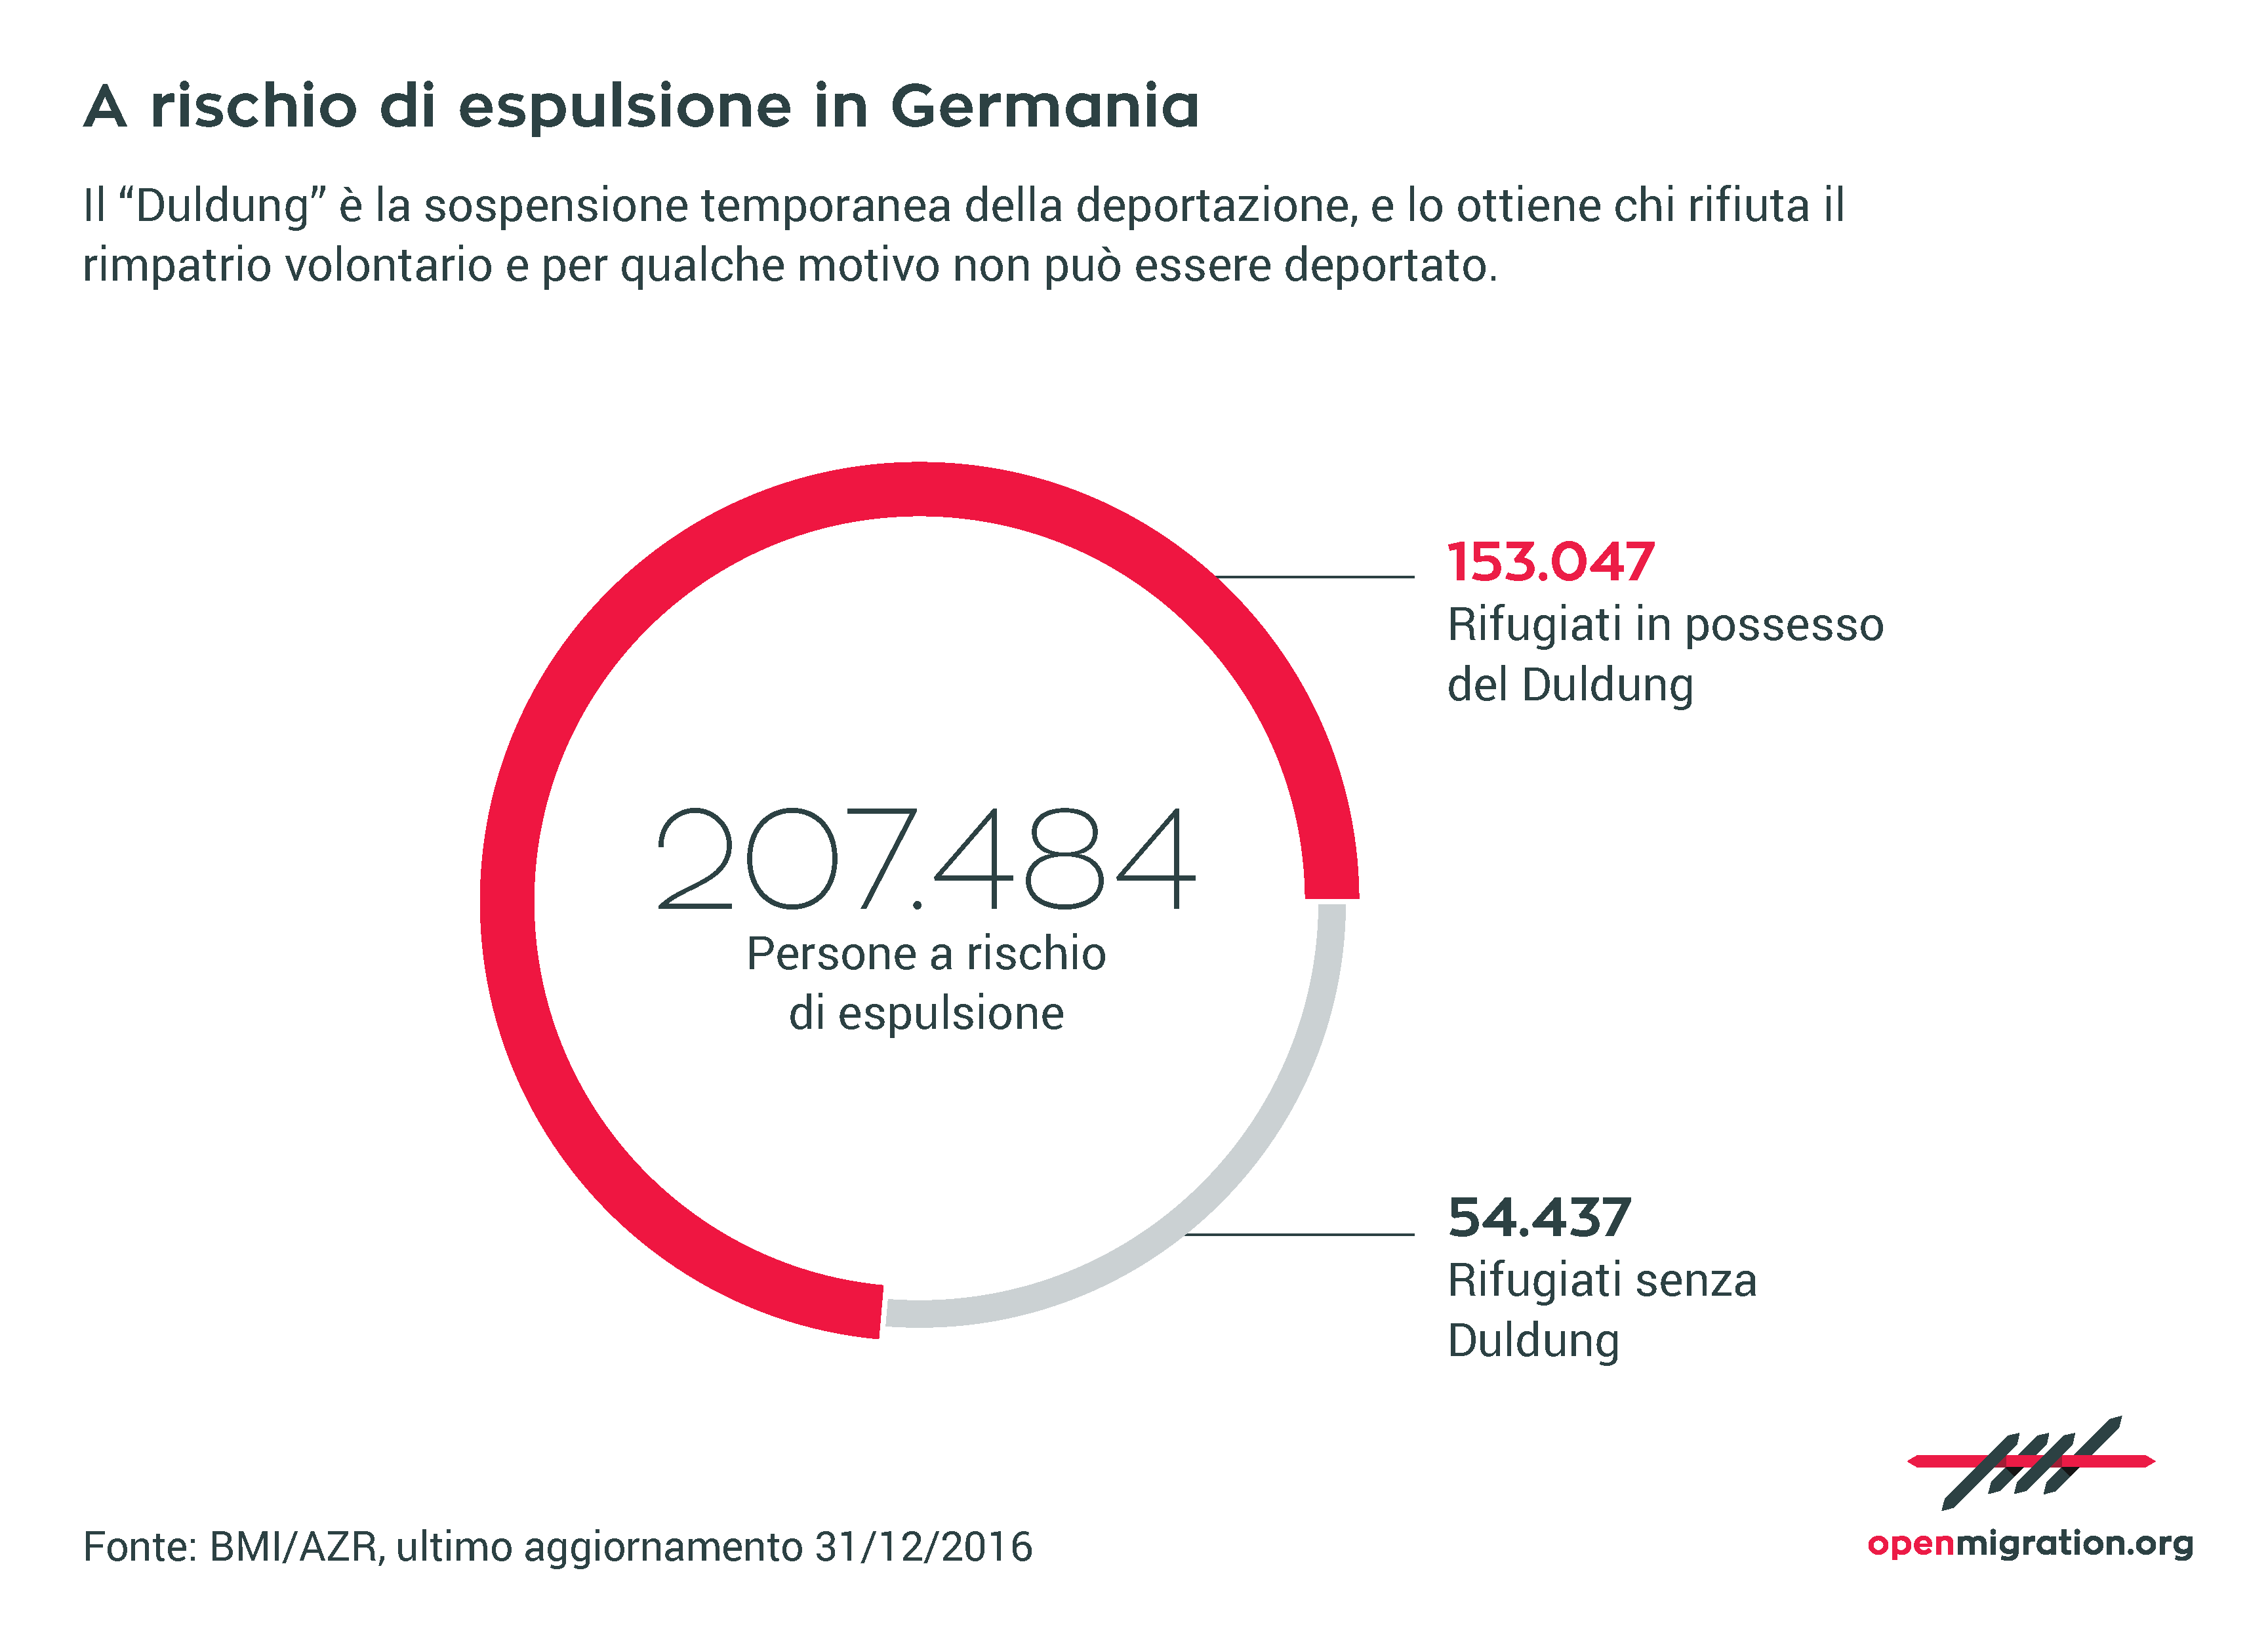 A rischio di espulsione in Germania, 2016